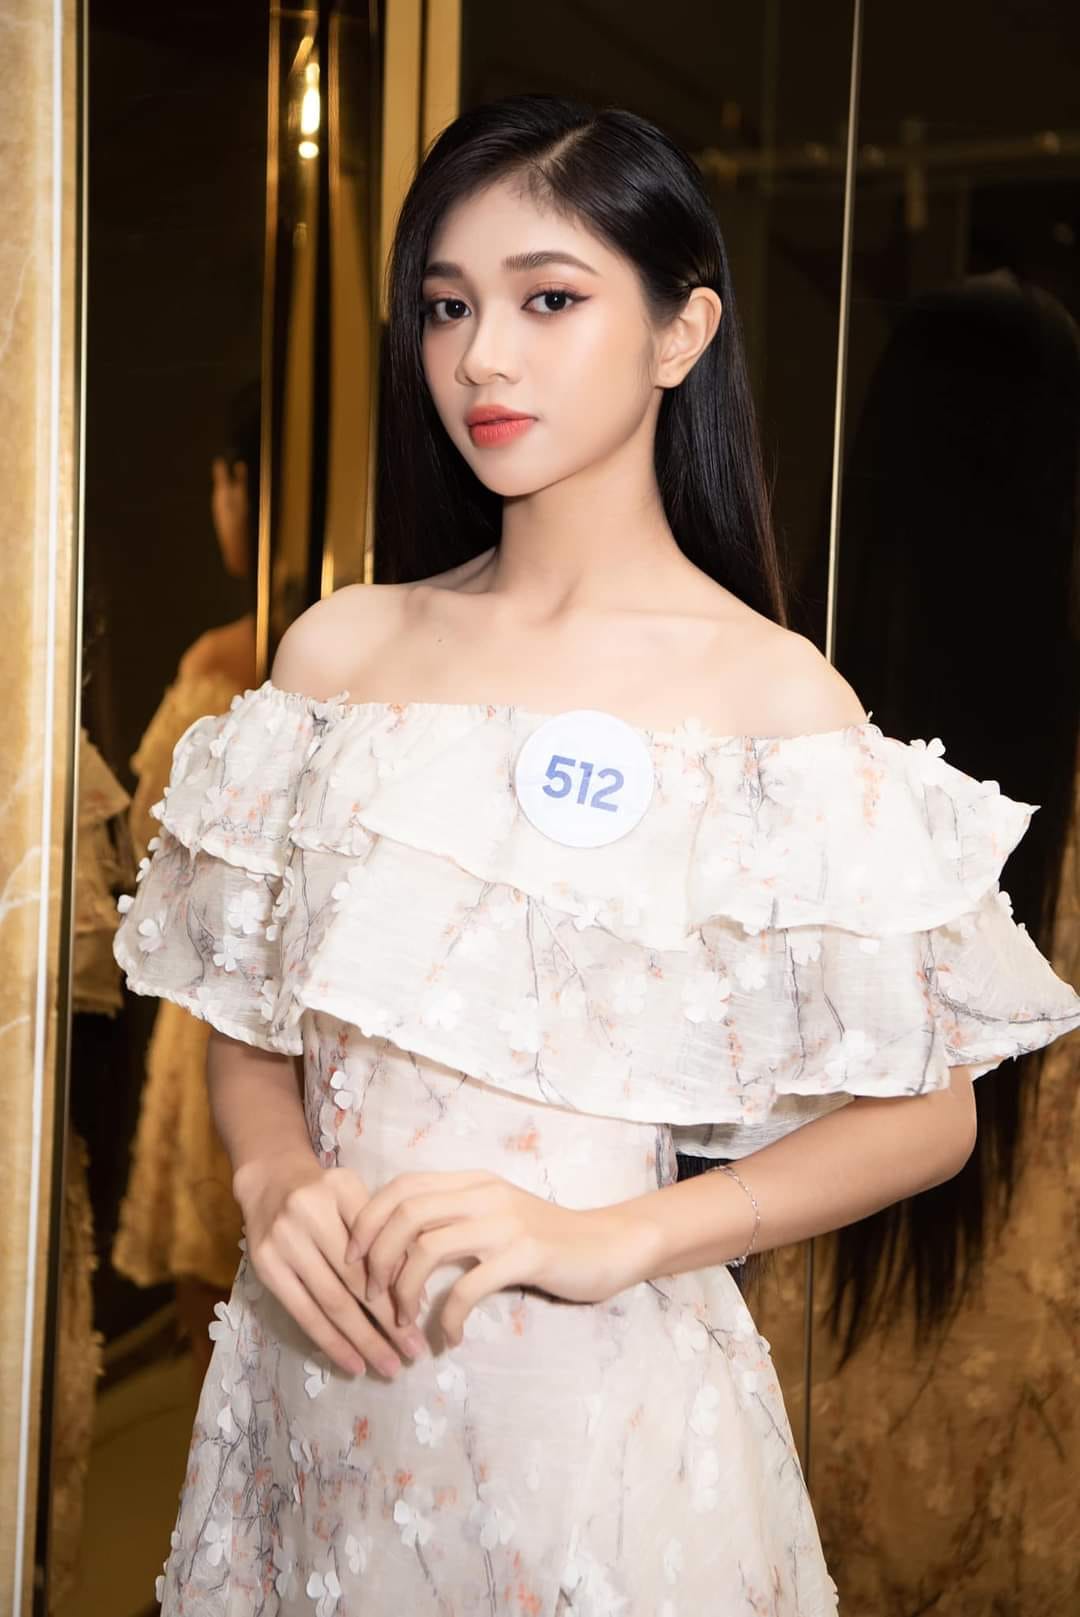 Tuổi thơ bất hạnh, nhiều biến cố của người đẹp Huỳnh Minh Kiên - Á hậu 2 Miss World Vietnam 2023 - ảnh 4